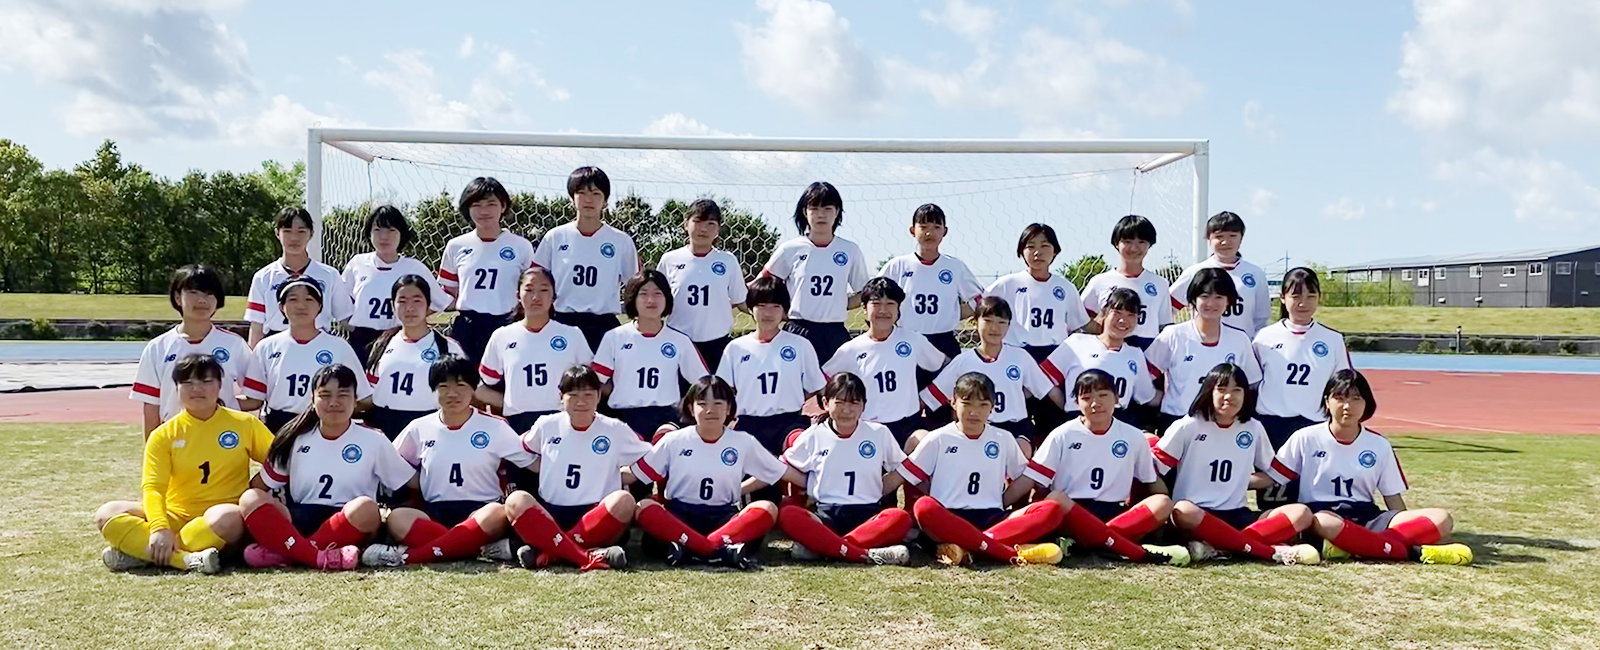 越谷ladys Family レディースファミリー 公式サイト 埼玉県越谷市の女子サッカークラブチーム 社会人 高校生 中学生 小学生 幼稚園児まで幅広い年代で活動しております